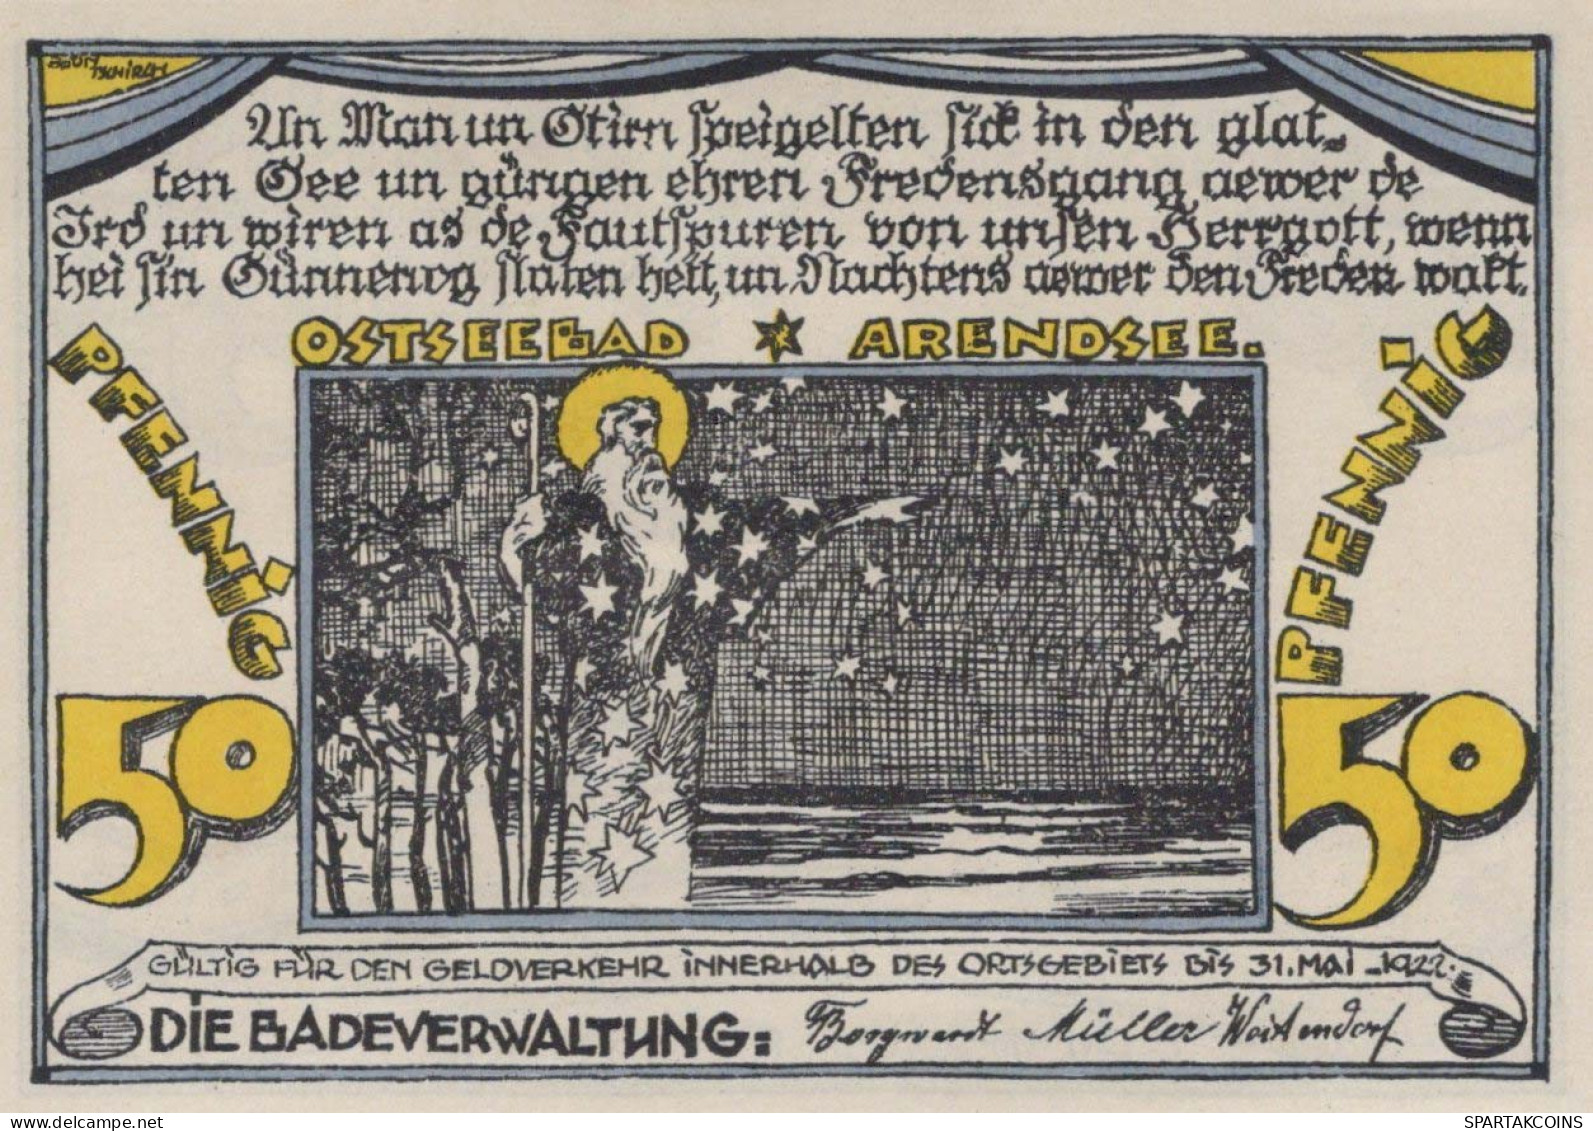 50 PFENNIG 1922 ARENDSEE AN DER OSTSEE Mecklenburg-Schwerin UNC DEUTSCHLAND #PA122 - [11] Lokale Uitgaven